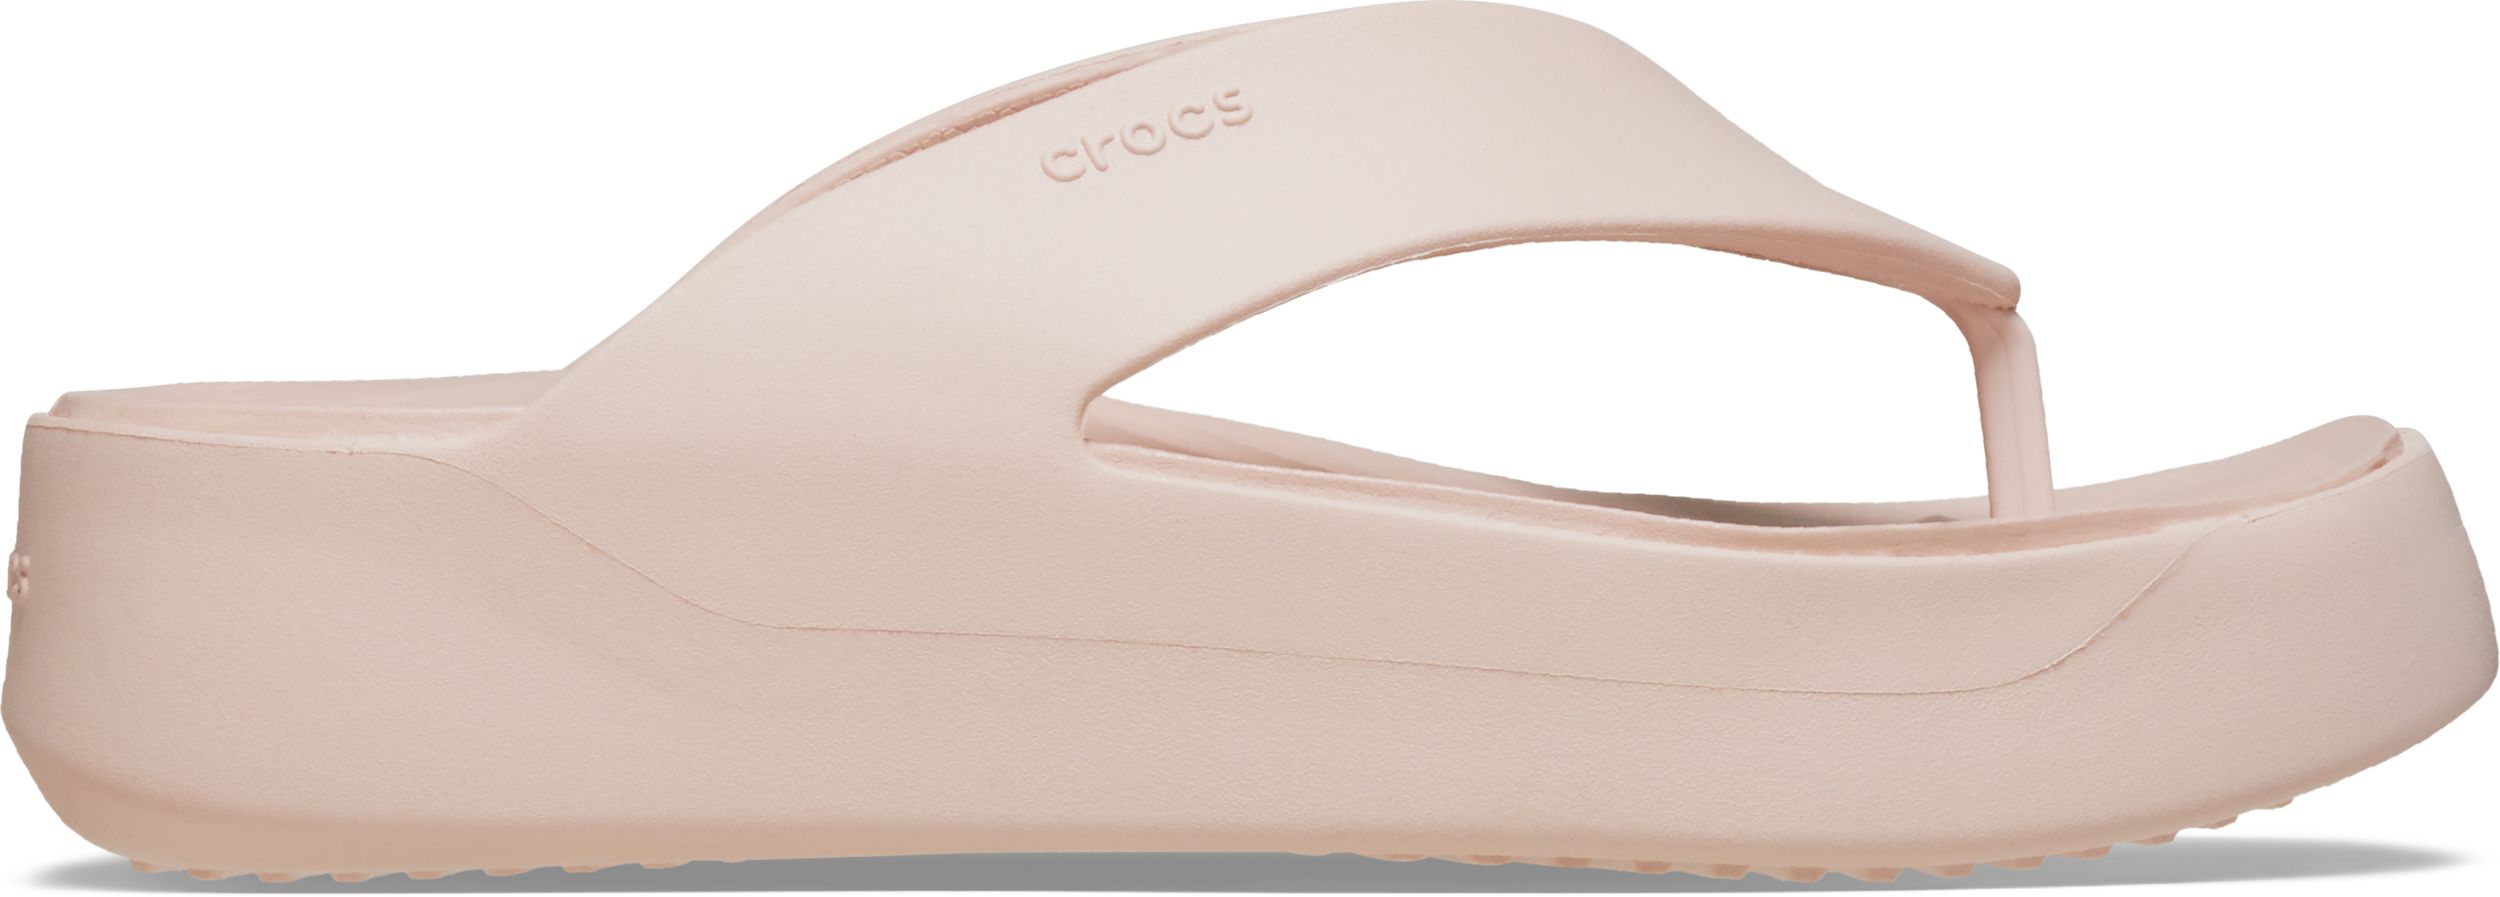 Image of Crocs Women's Getaway Platform Flip Flop Sandals